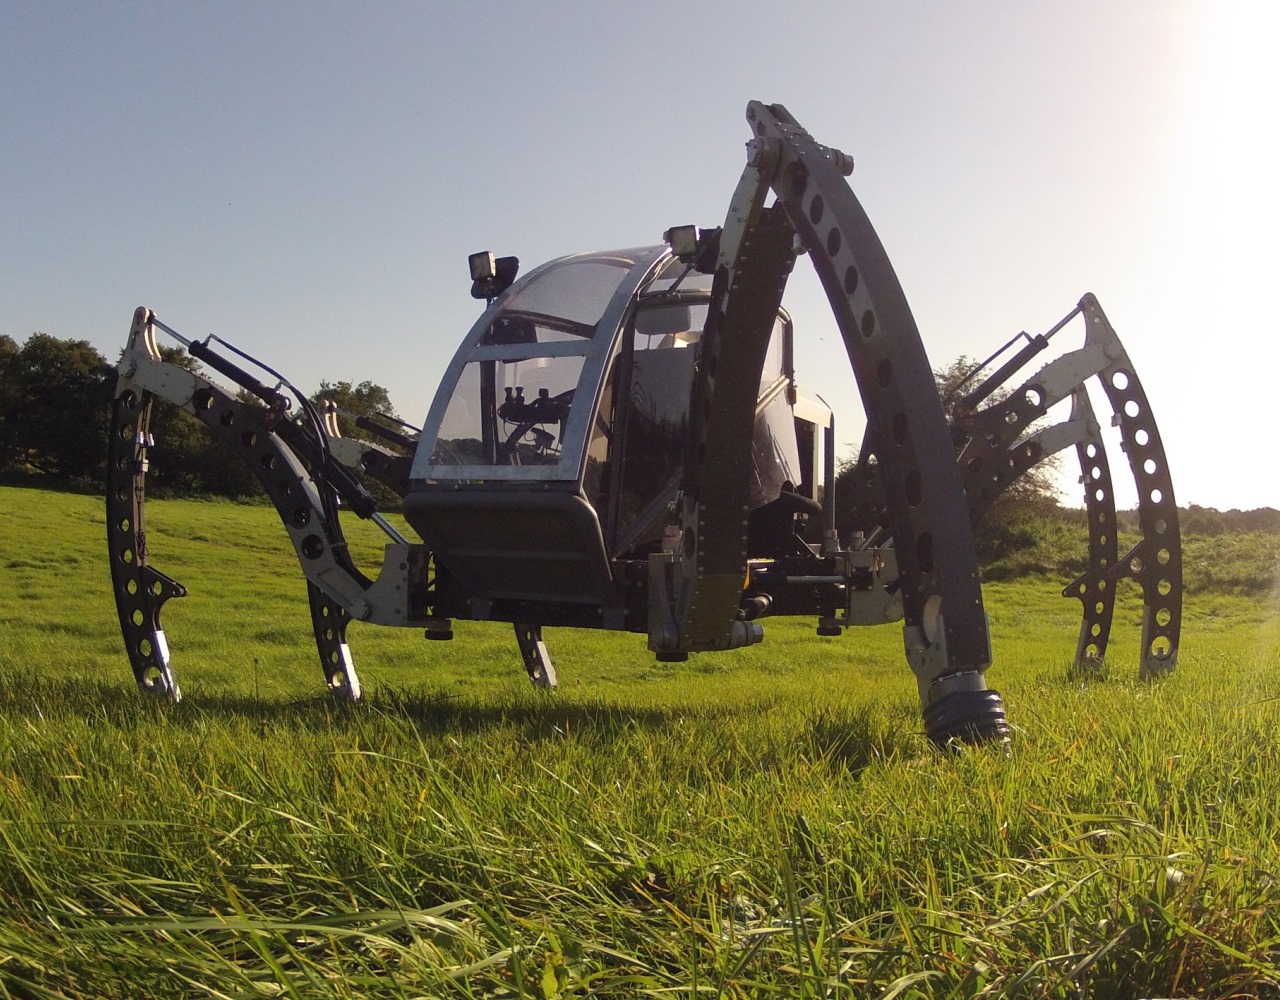 Sześcionożny robot o nazwie “Mantis” jest wykorzystywany w przemyśle filmowym, ale także w innych branżach, np. w bezzałogowych wypraw podmorskich lub do pracy w środowiskach wrażliwych na uszkodzenie ternu. Bosch Rexroth jest dostawcą kluczowych komponentów hydraulicznych oraz fachowej wiedzy w dziedzinie hydrauliki dla tego robota. (Zdjęcie: Matt Denton, Micromagic Systems)